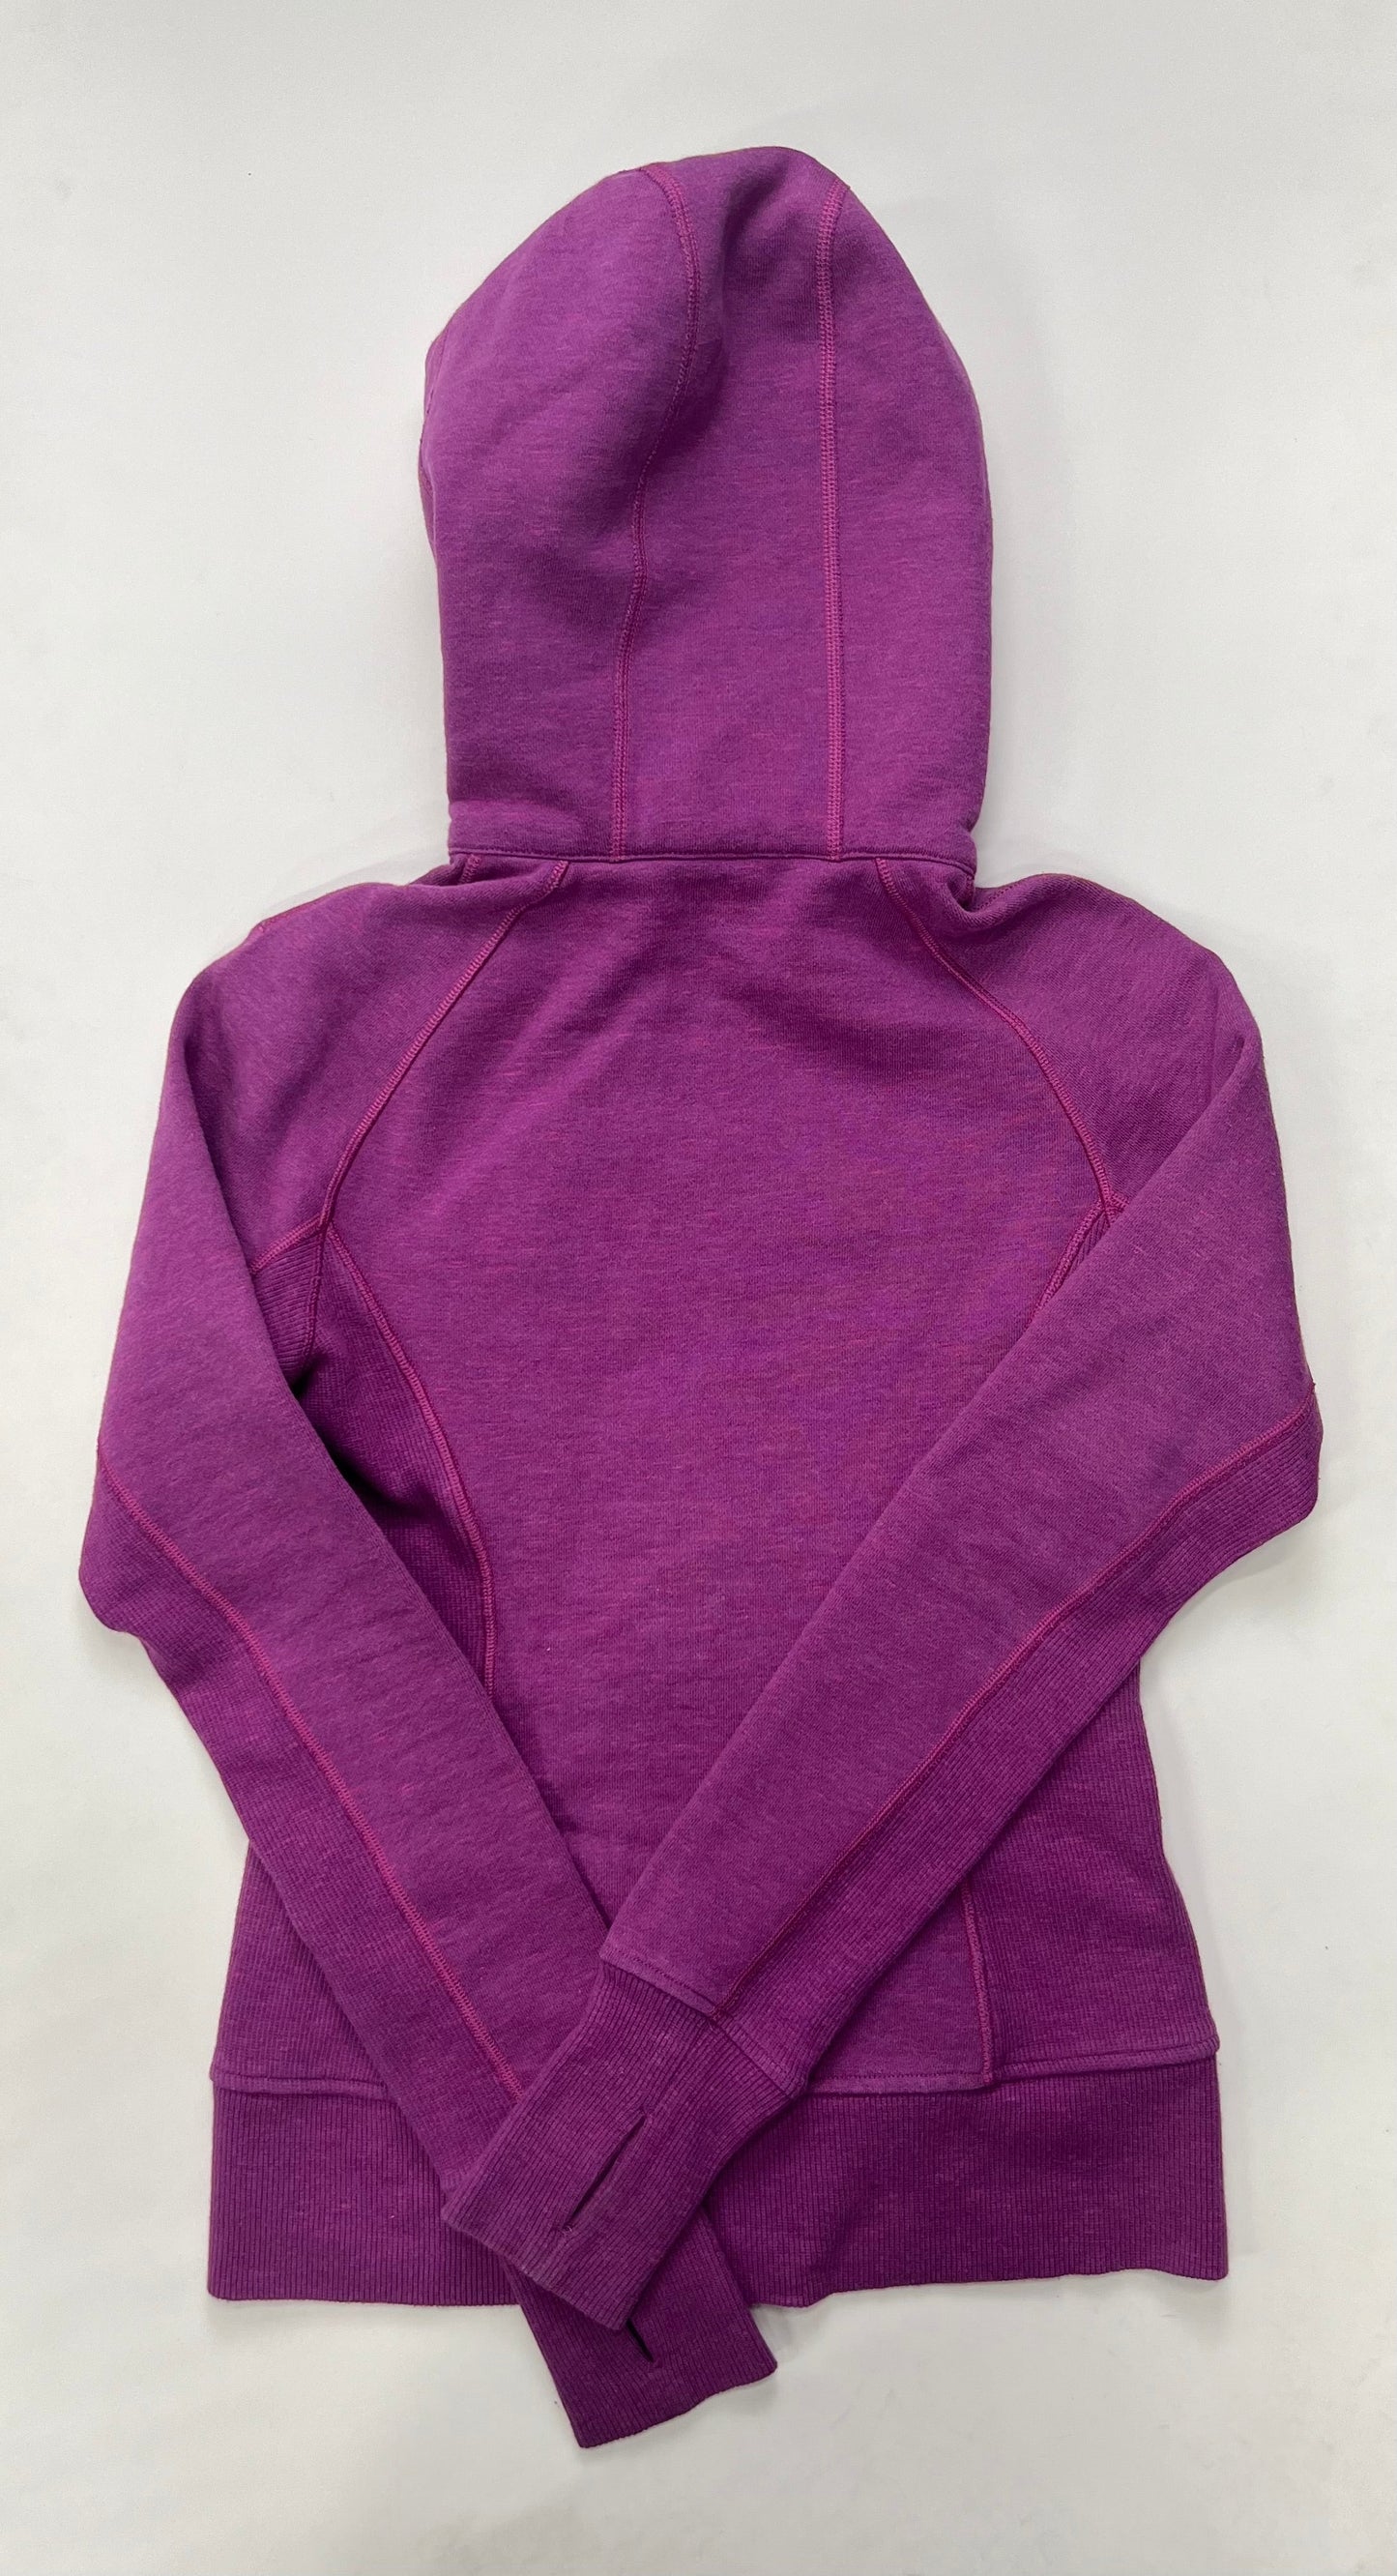 Purple Athletic Jacket Lululemon, Size S